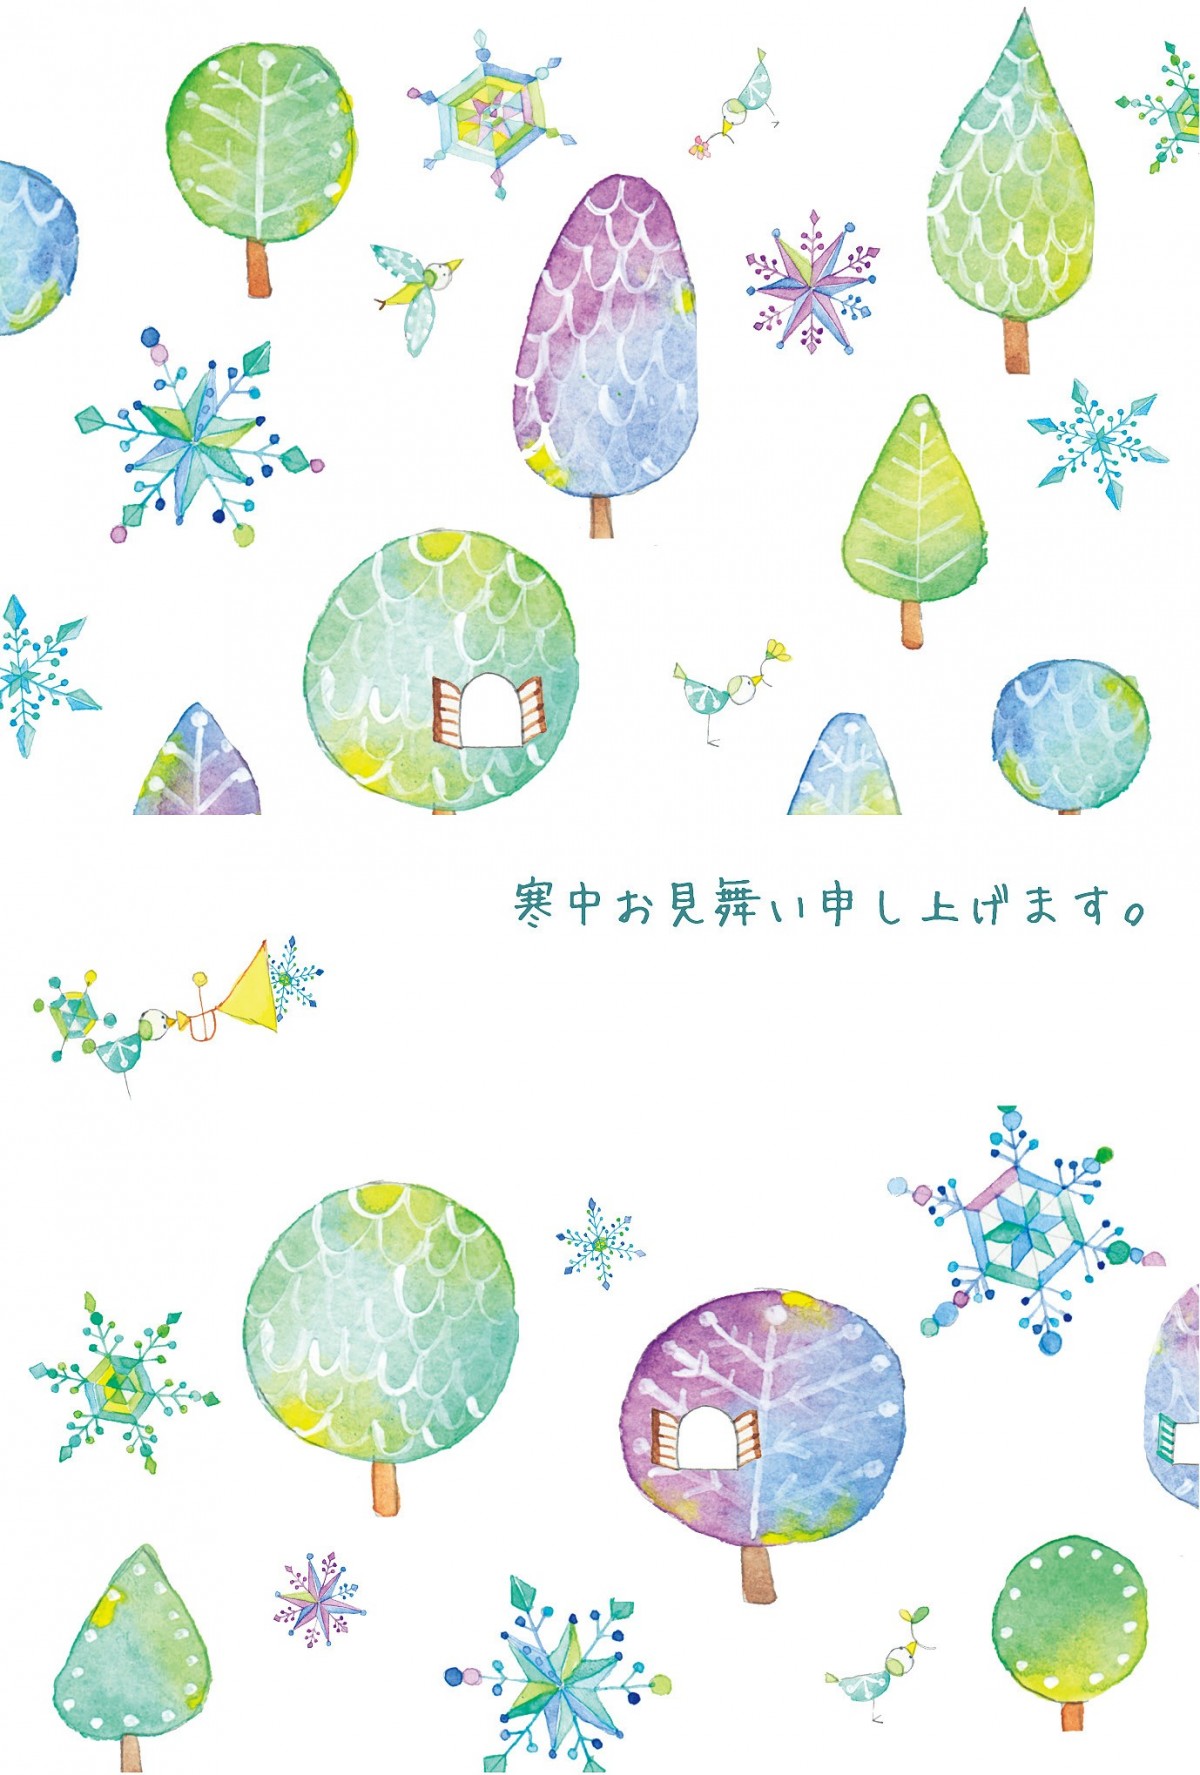 寒中見舞いカード 5枚セット 美しい冬の森 Iichi ハンドメイド クラフト作品 手仕事品の通販